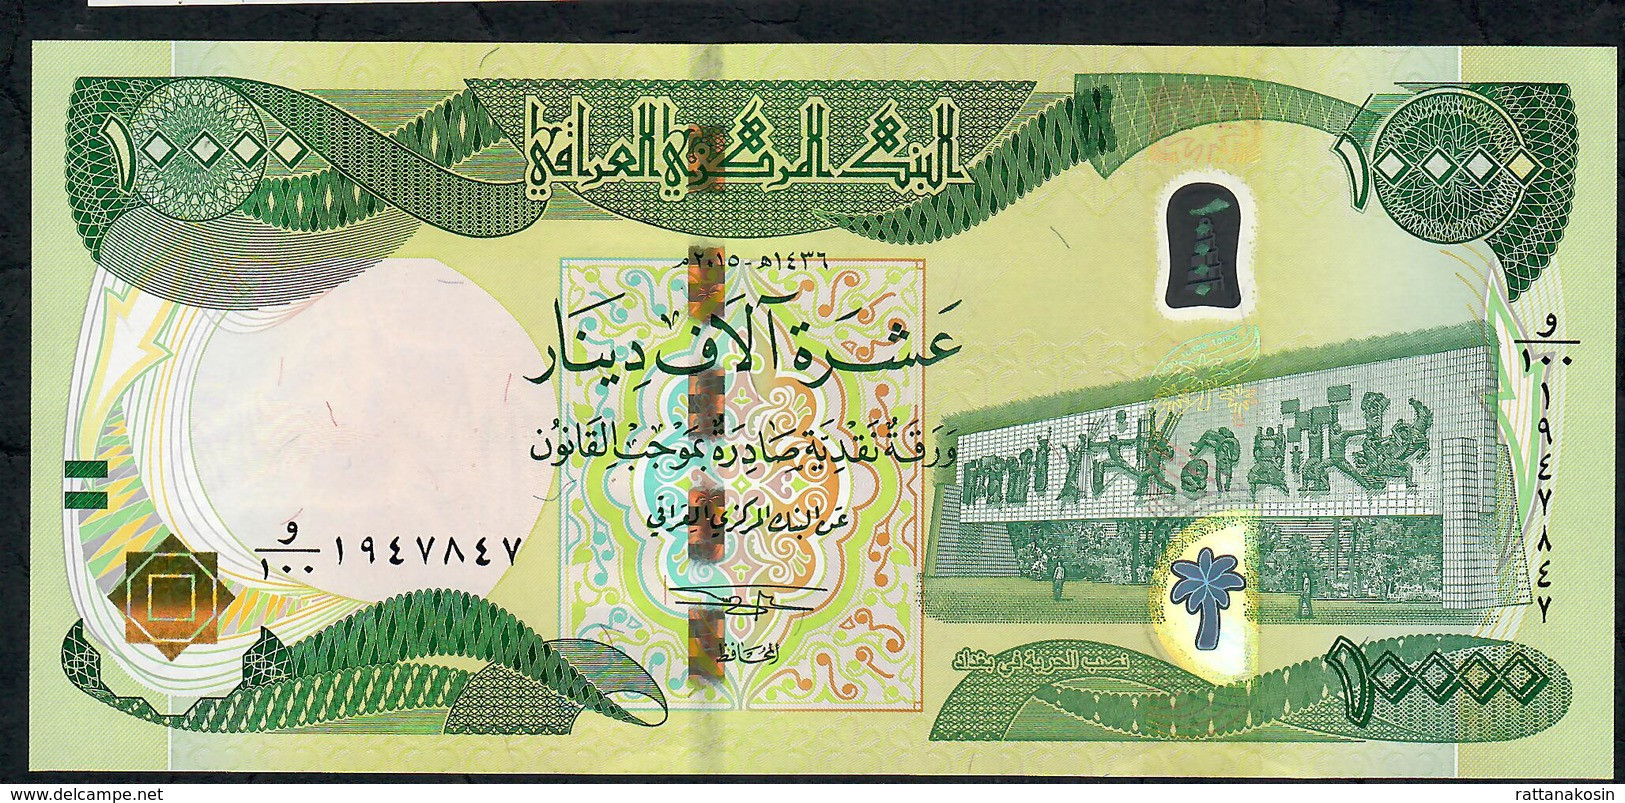 IRAQ P101b 10.000 Or 10000 DINARS 2015 Signature 18 UNC. - Iraq